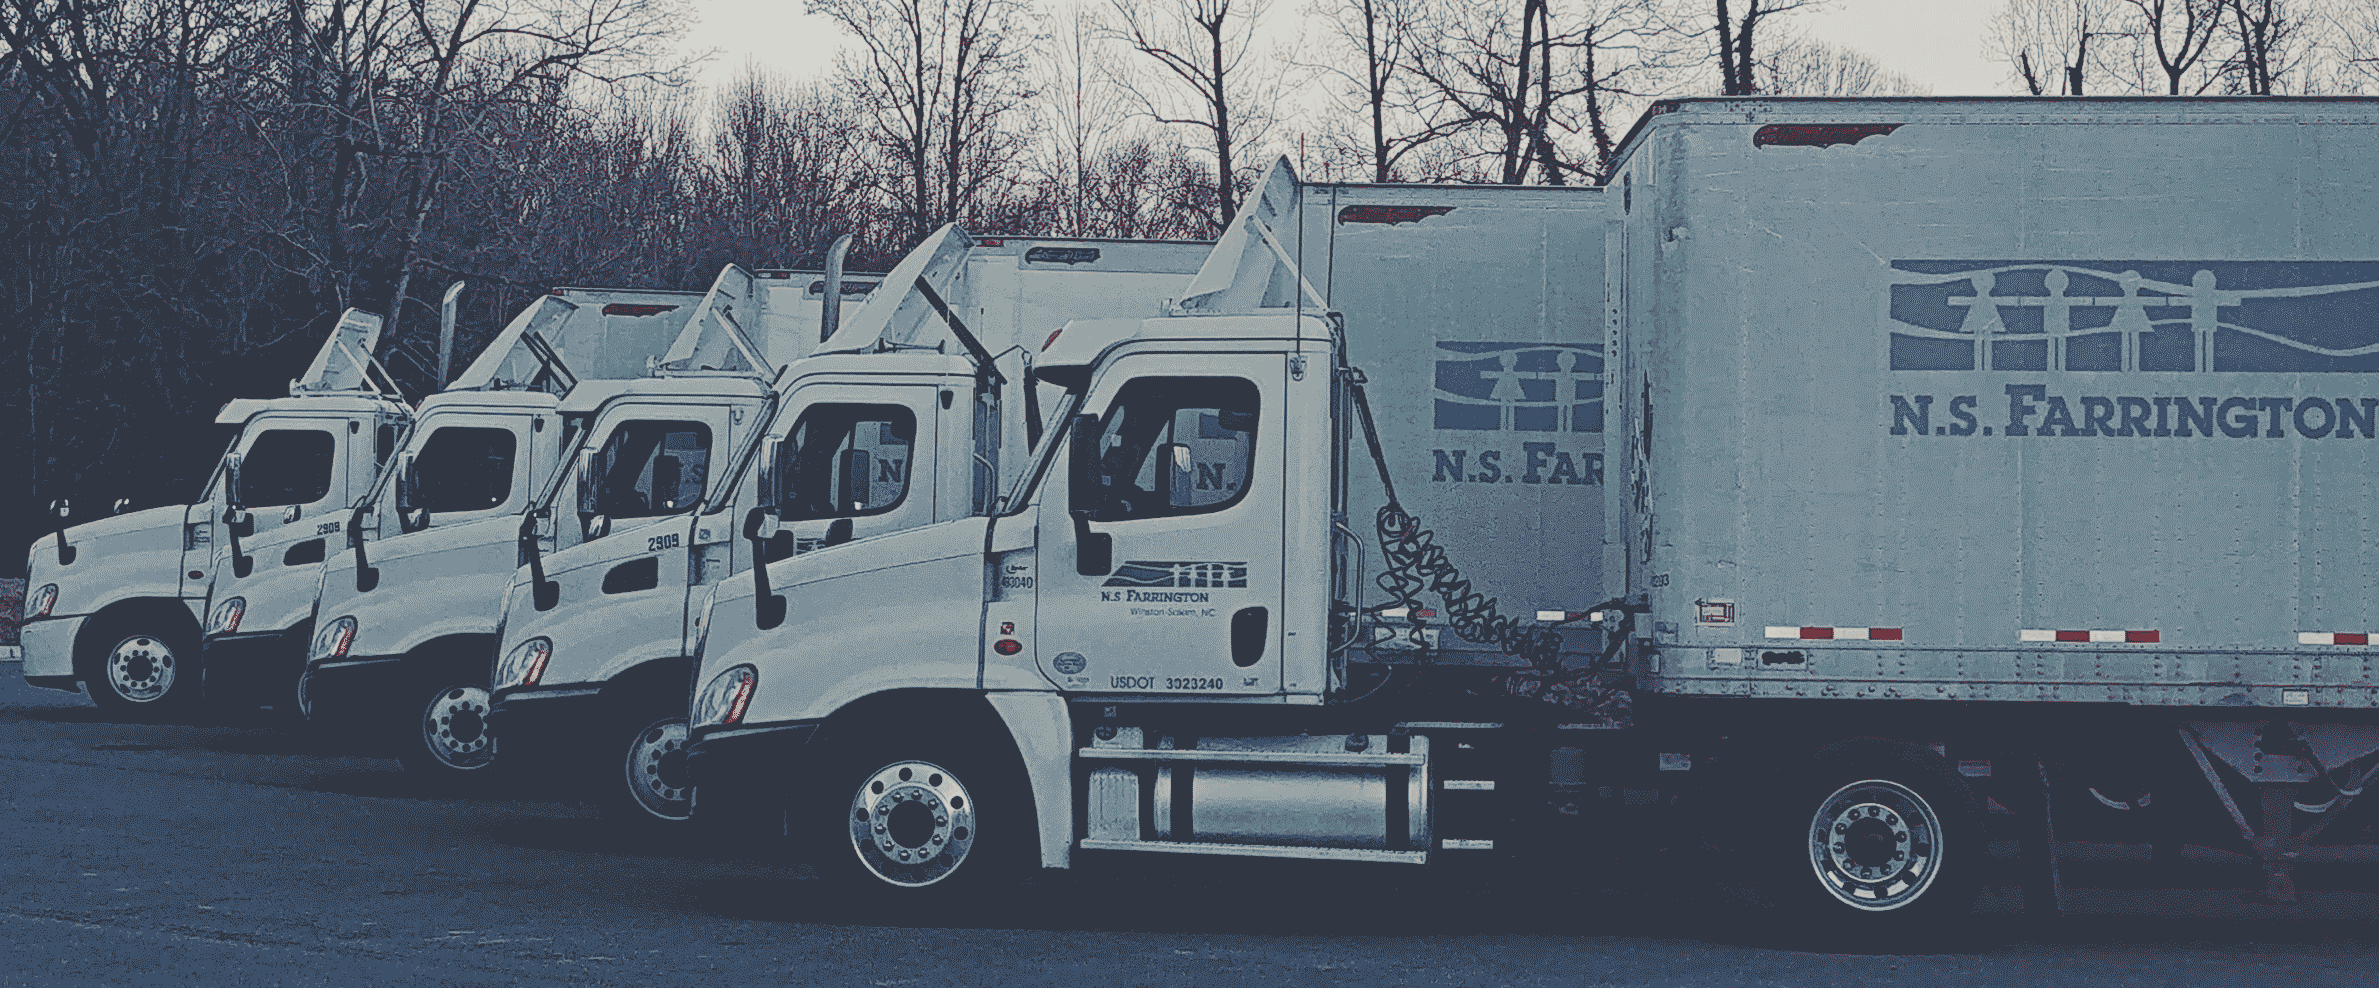 N.S. Farrington Trucks